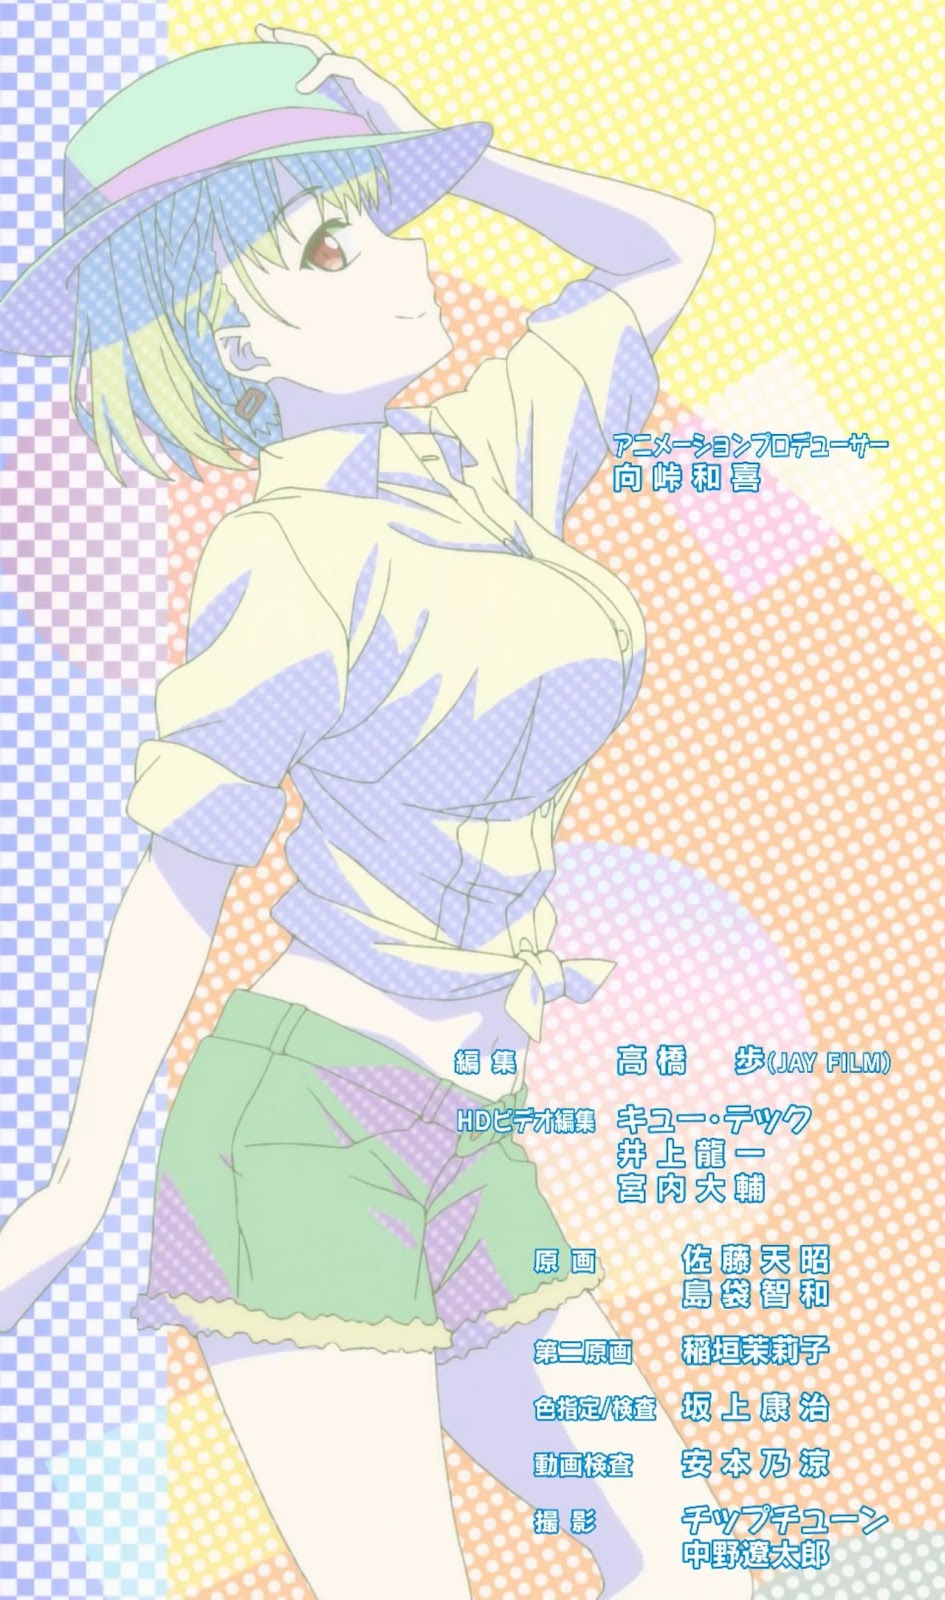 HD wallpaper: Getsuyoubi no Tawawa, anime girls, Ai-chan (Getsuyoubi no  Tawawa)